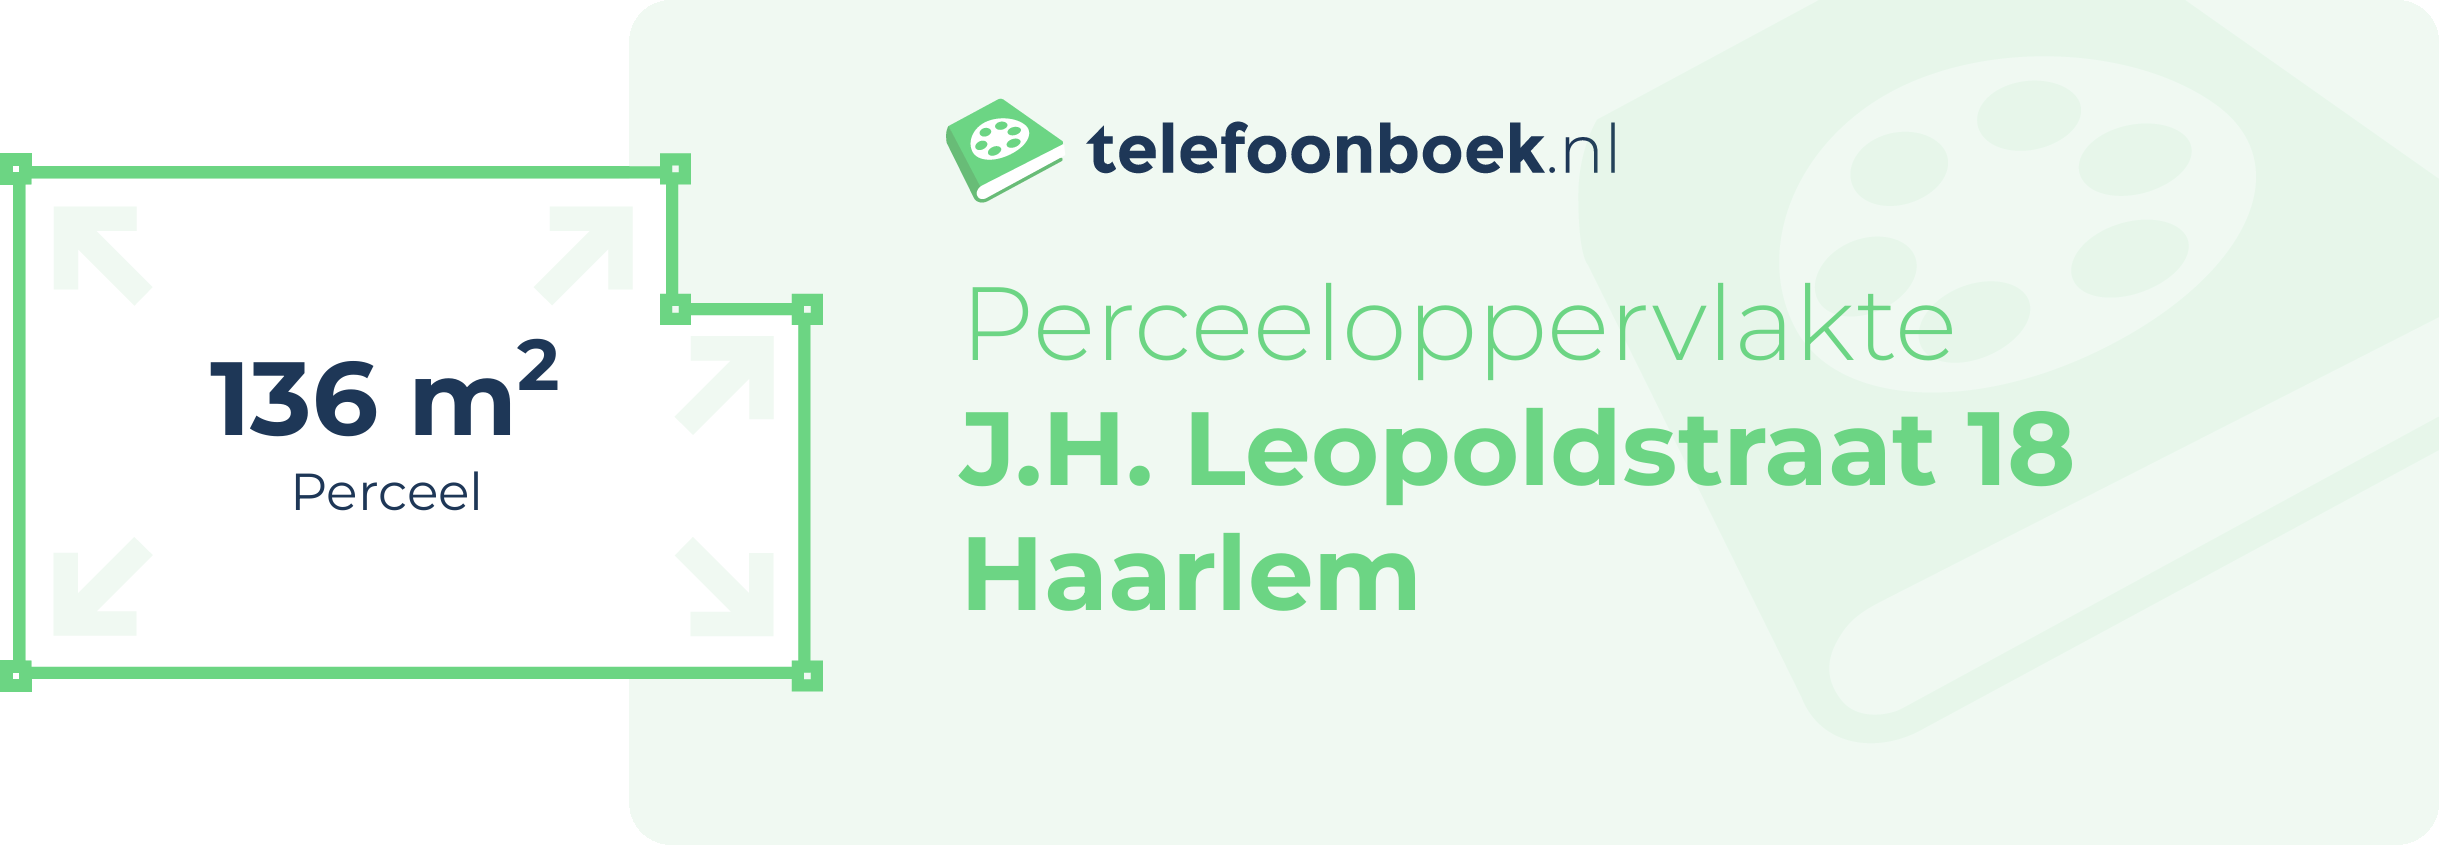 Perceeloppervlakte J.H. Leopoldstraat 18 Haarlem